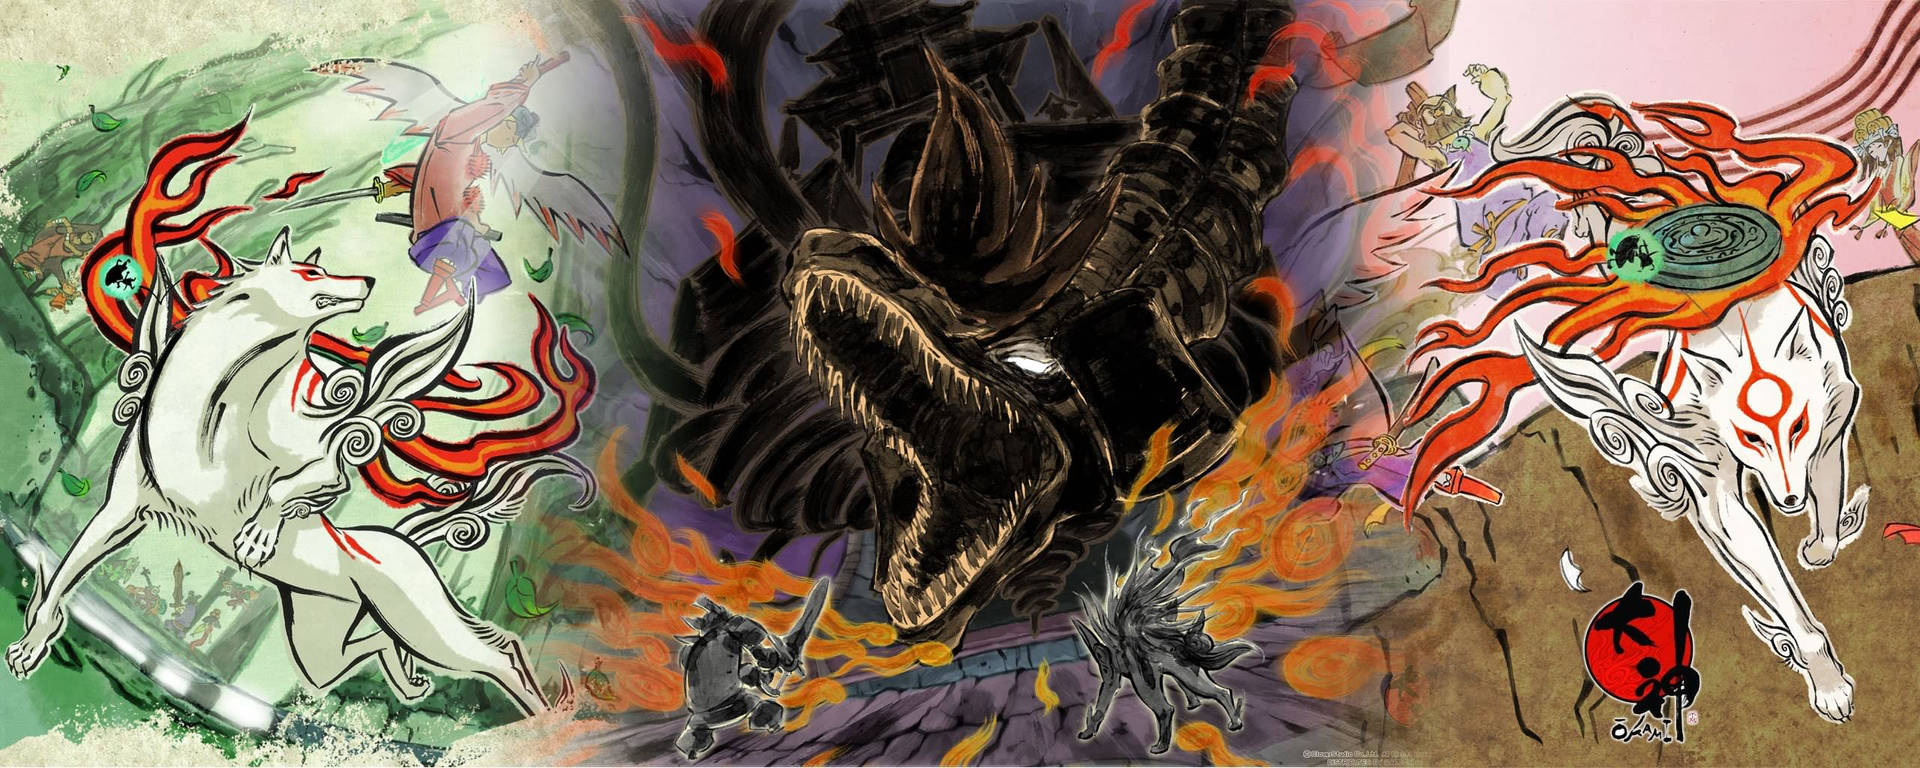 Okami Vs Black Dragon Background